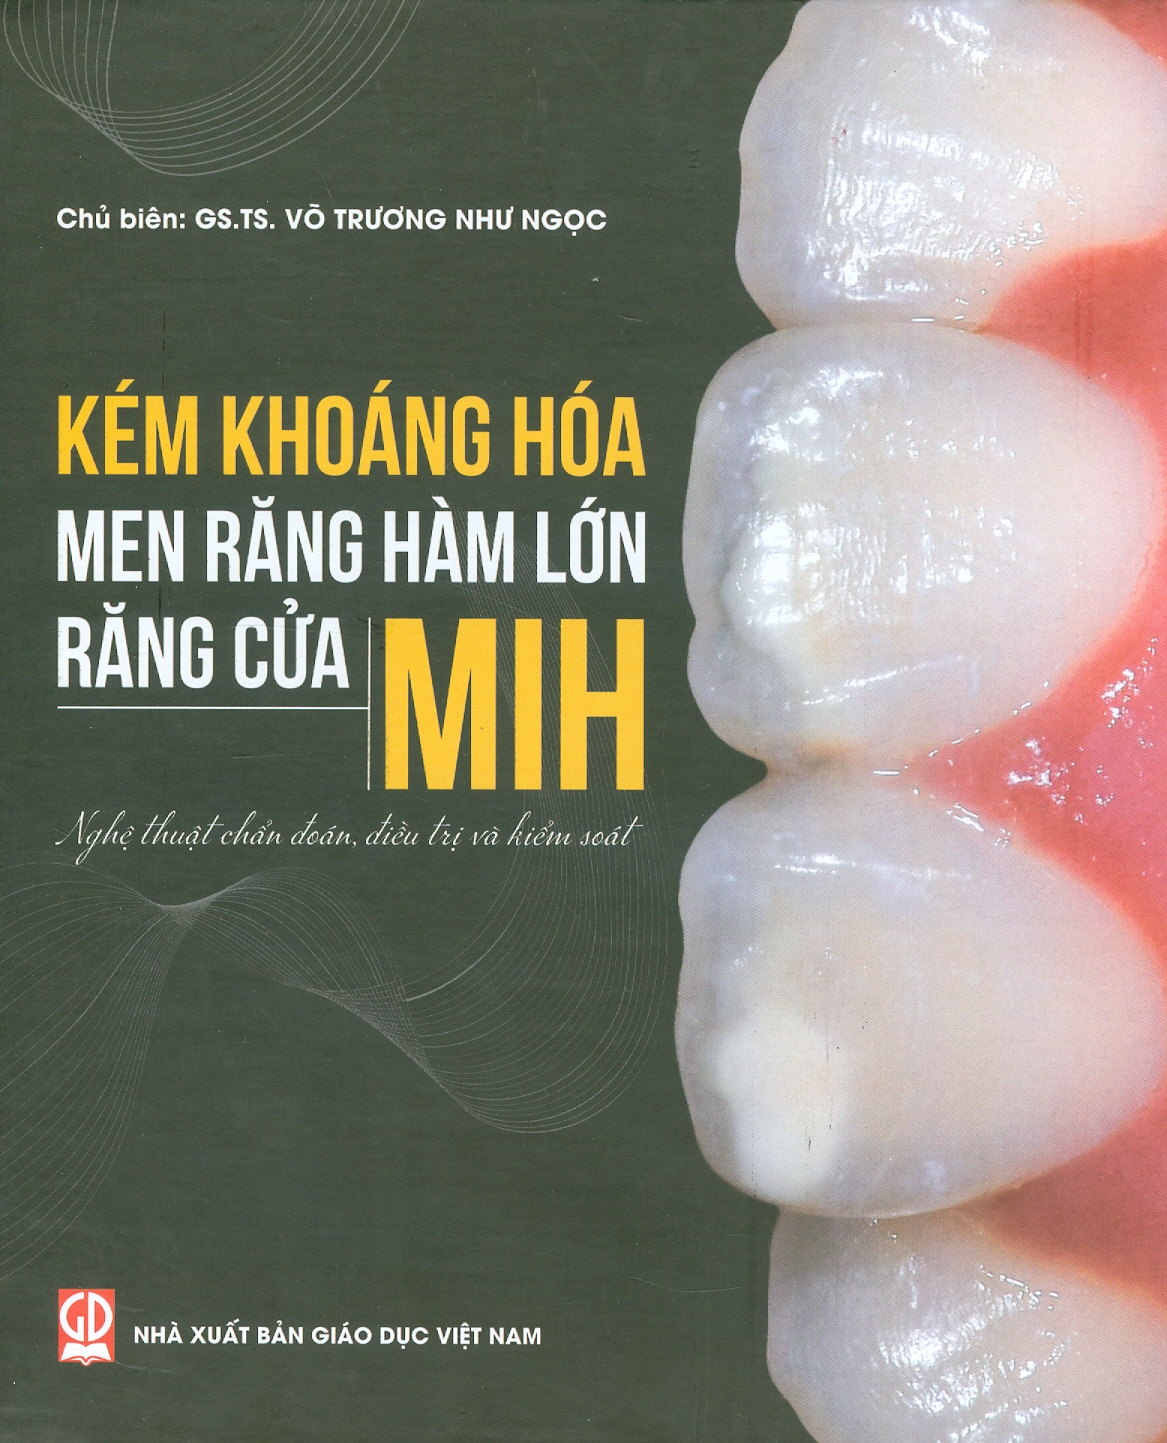 Kém Khoáng Hoá Men Răng Hàm Lớn - Răng Cửa MIH: Nghệ Thuật Chẩn Đoán, Điều Tri Và Kiểm Soát (In màu, Bìa cứng)